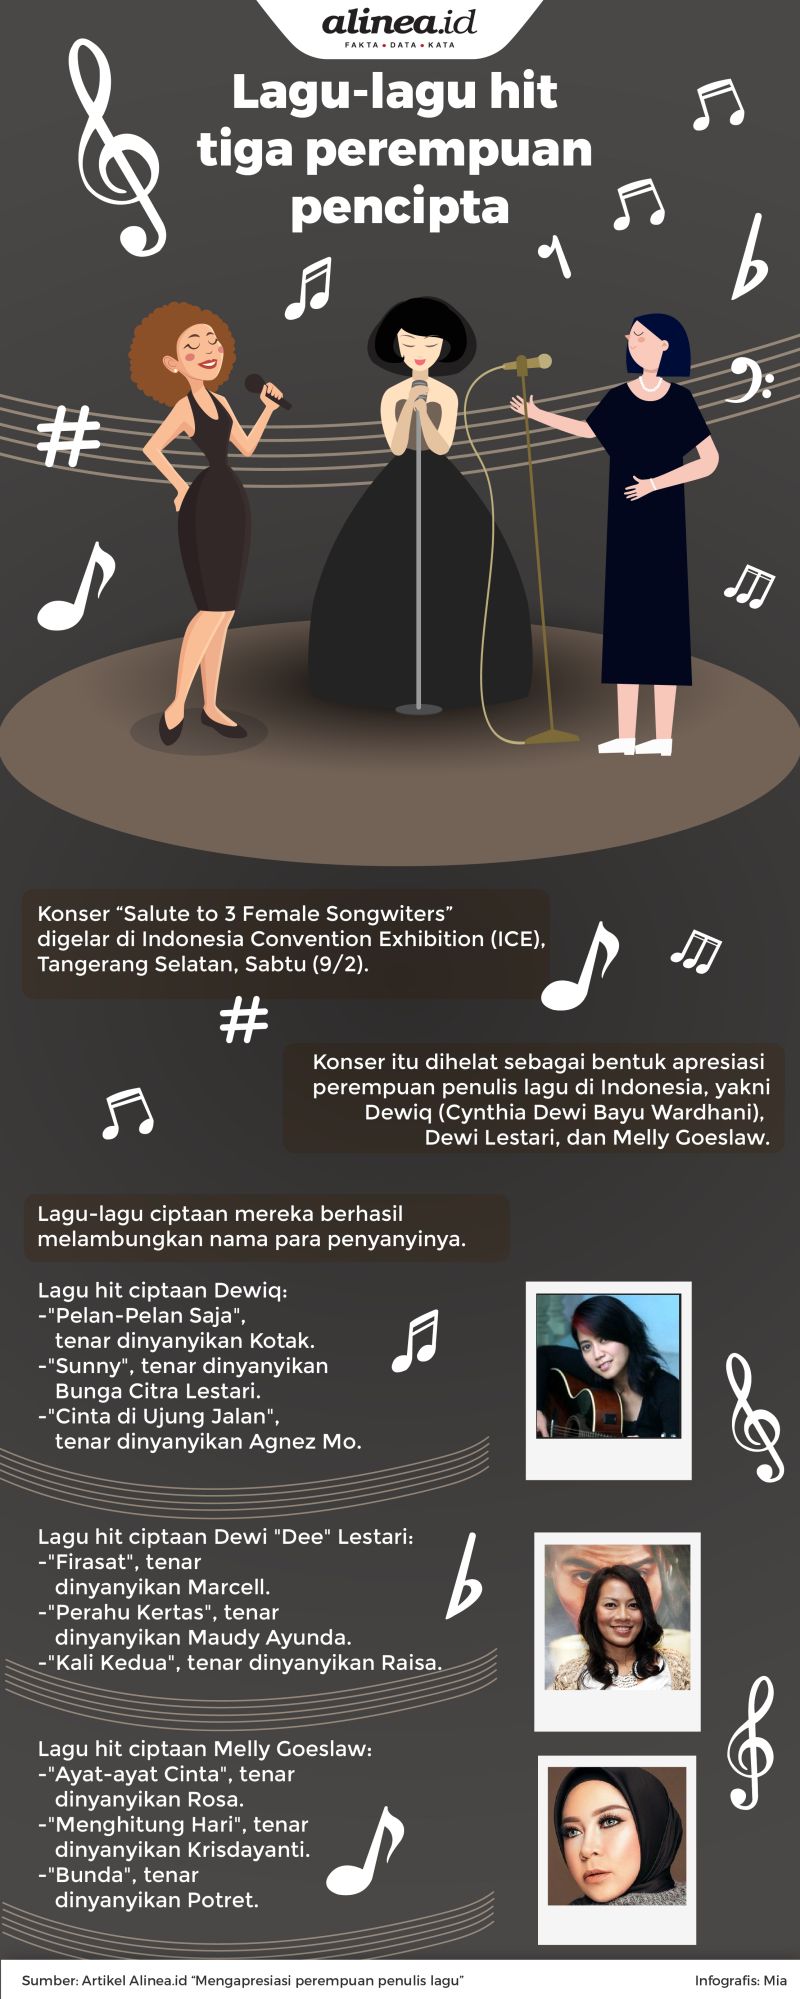 Dari dahulu perempuan penulis lagu sudah memberikan kontribusi penting bagi khazanah musik Indonesia.